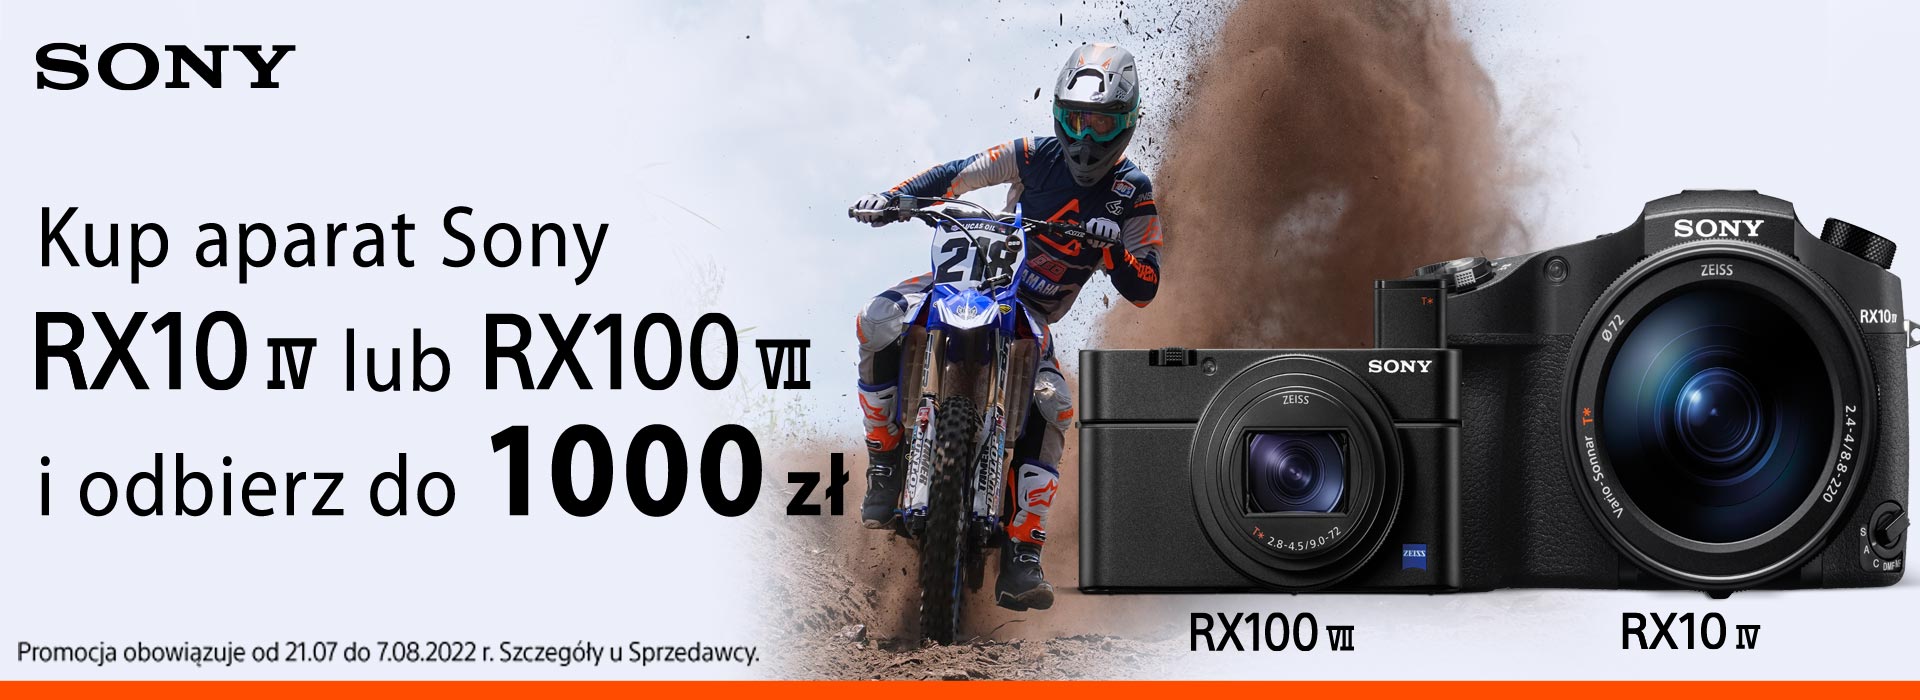 Kup aparat Sony RX10 IV lub RX100 VII i odbierz do 1000 zł